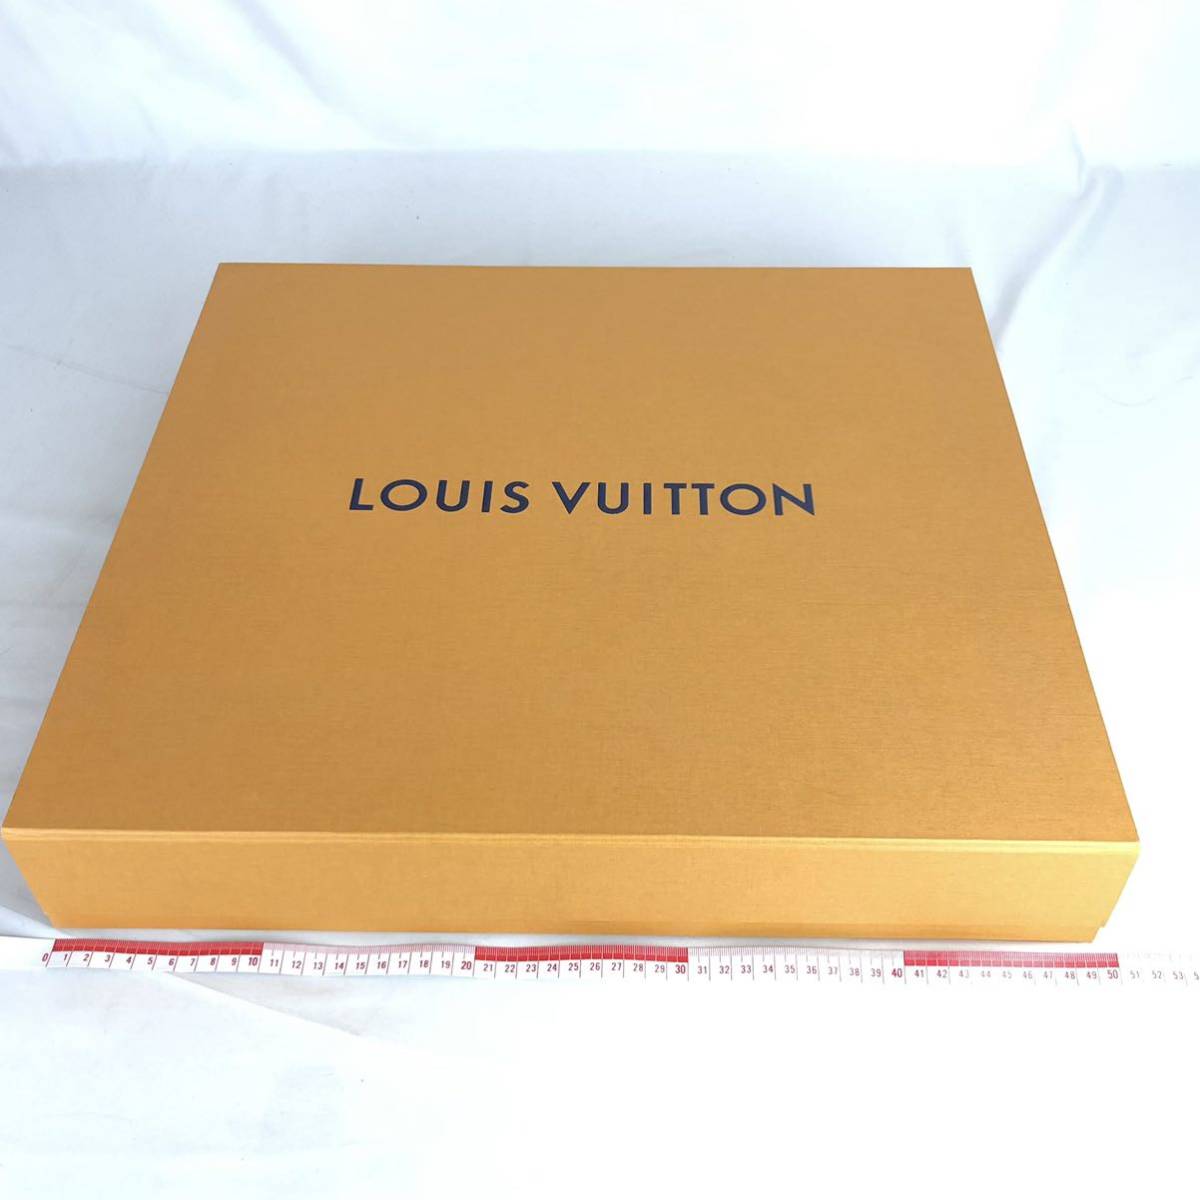 LOUIS VUITTON ルイヴィトン 空箱 まとめ 4箱 大型 収納ケース オレンジBOX 空き箱 箱_画像2